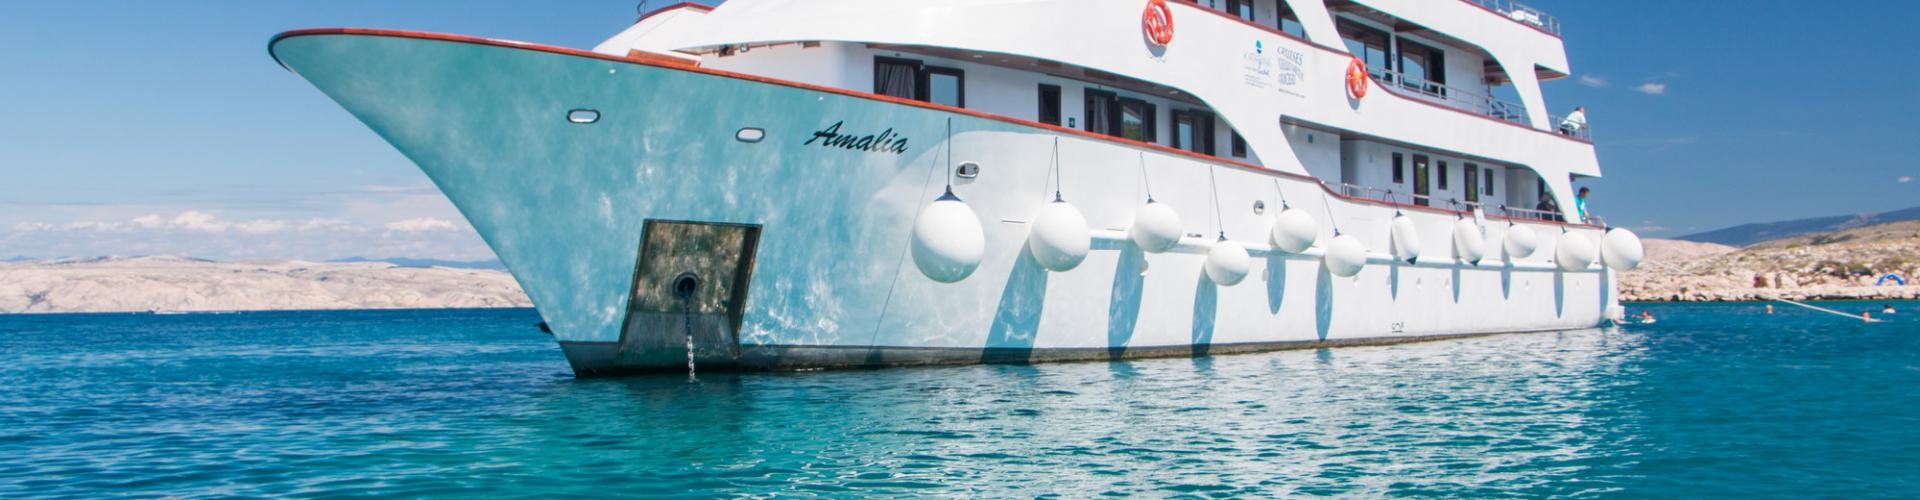 Premium Superior krydstogtskib MV Amalia- motoryacht